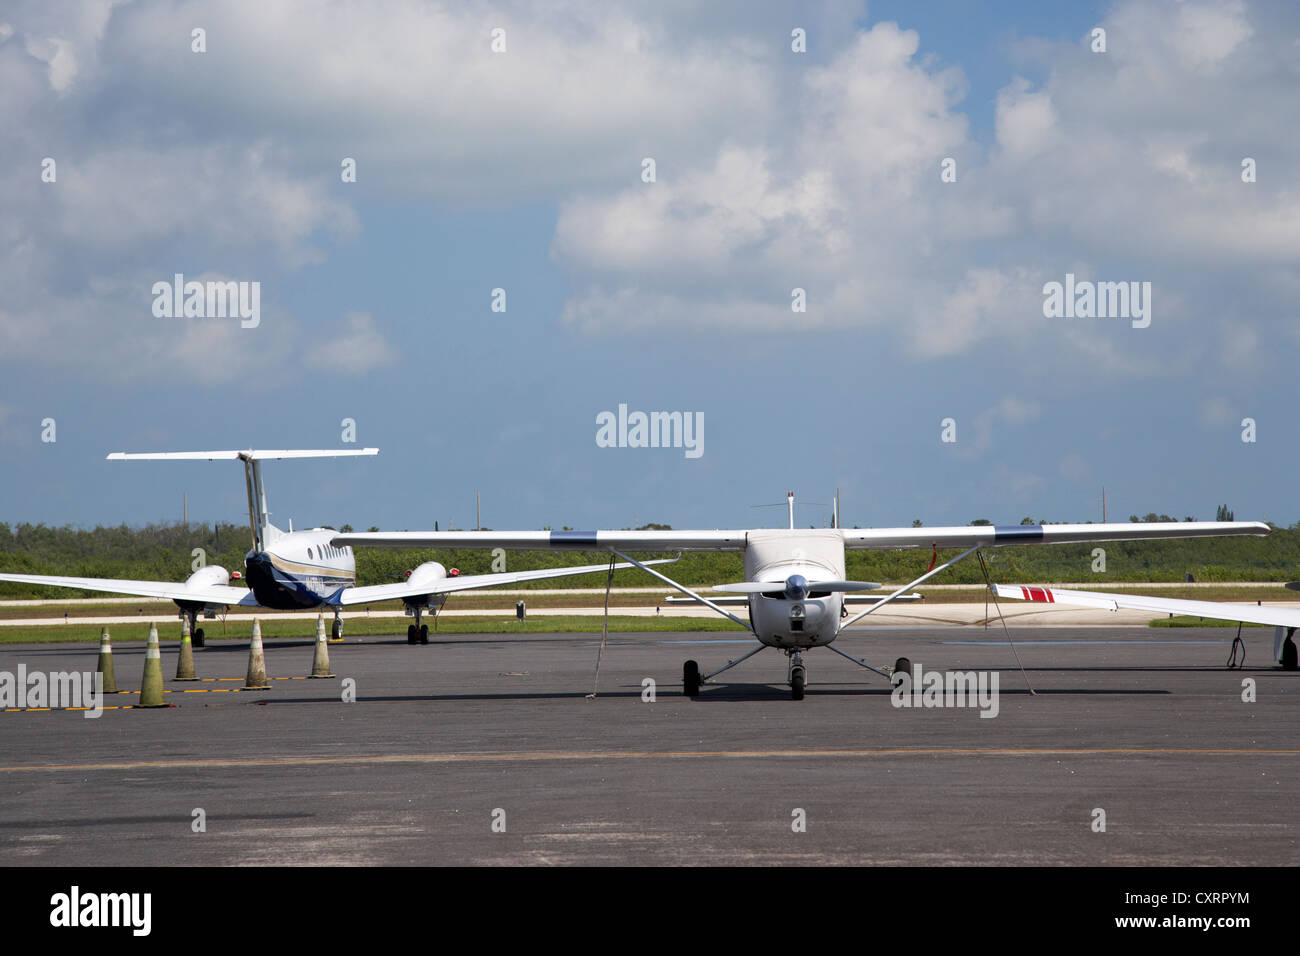 Avions légers liés sur le stand à l'aéroport international de Key West Florida Keys usa Banque D'Images